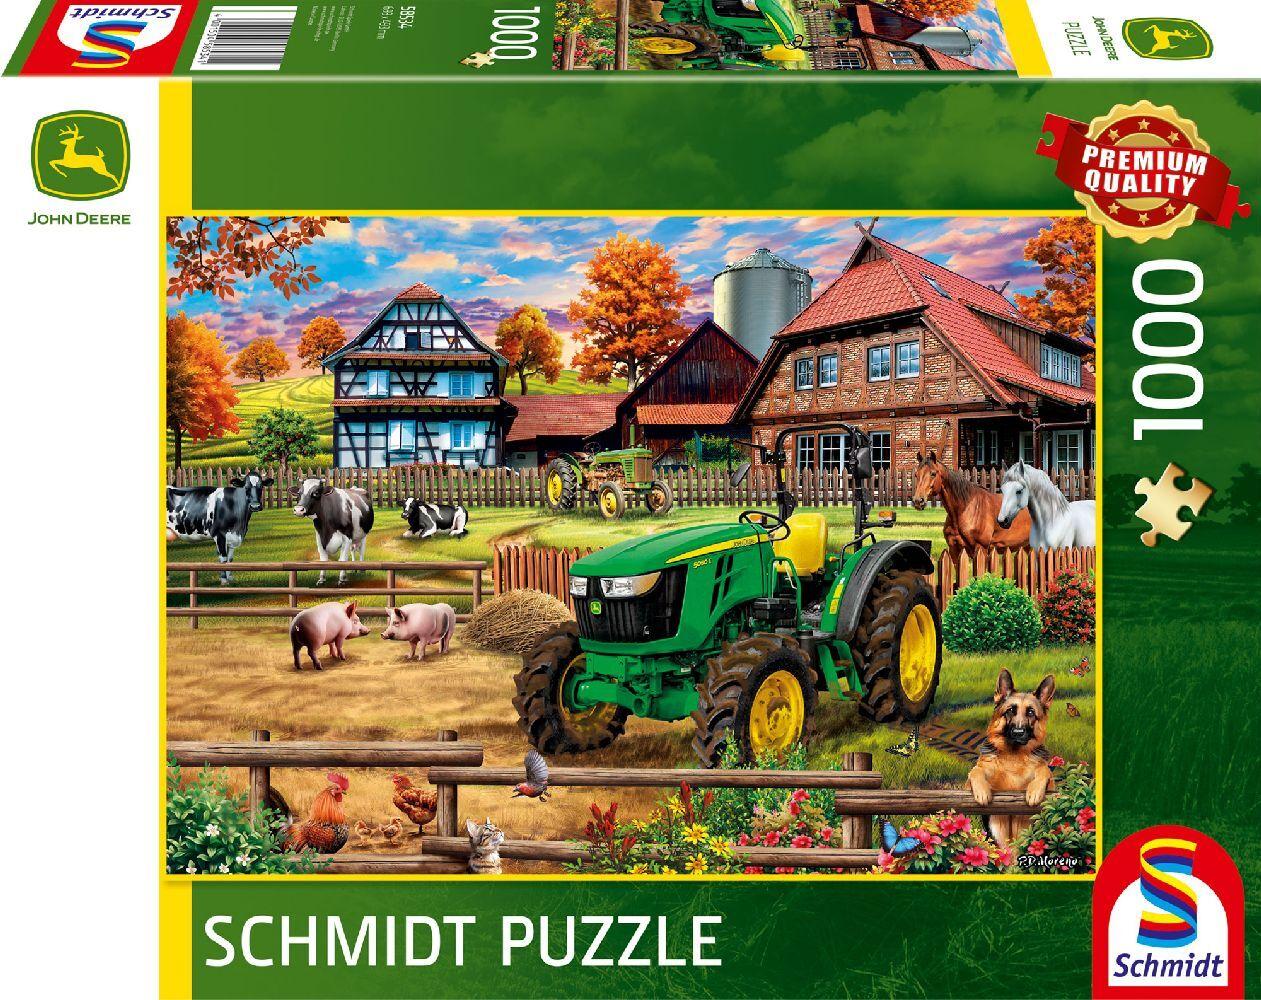 Schmidt Spiele - John Deere: Bauernhof mit Traktor 5050E, 1.000 Teile